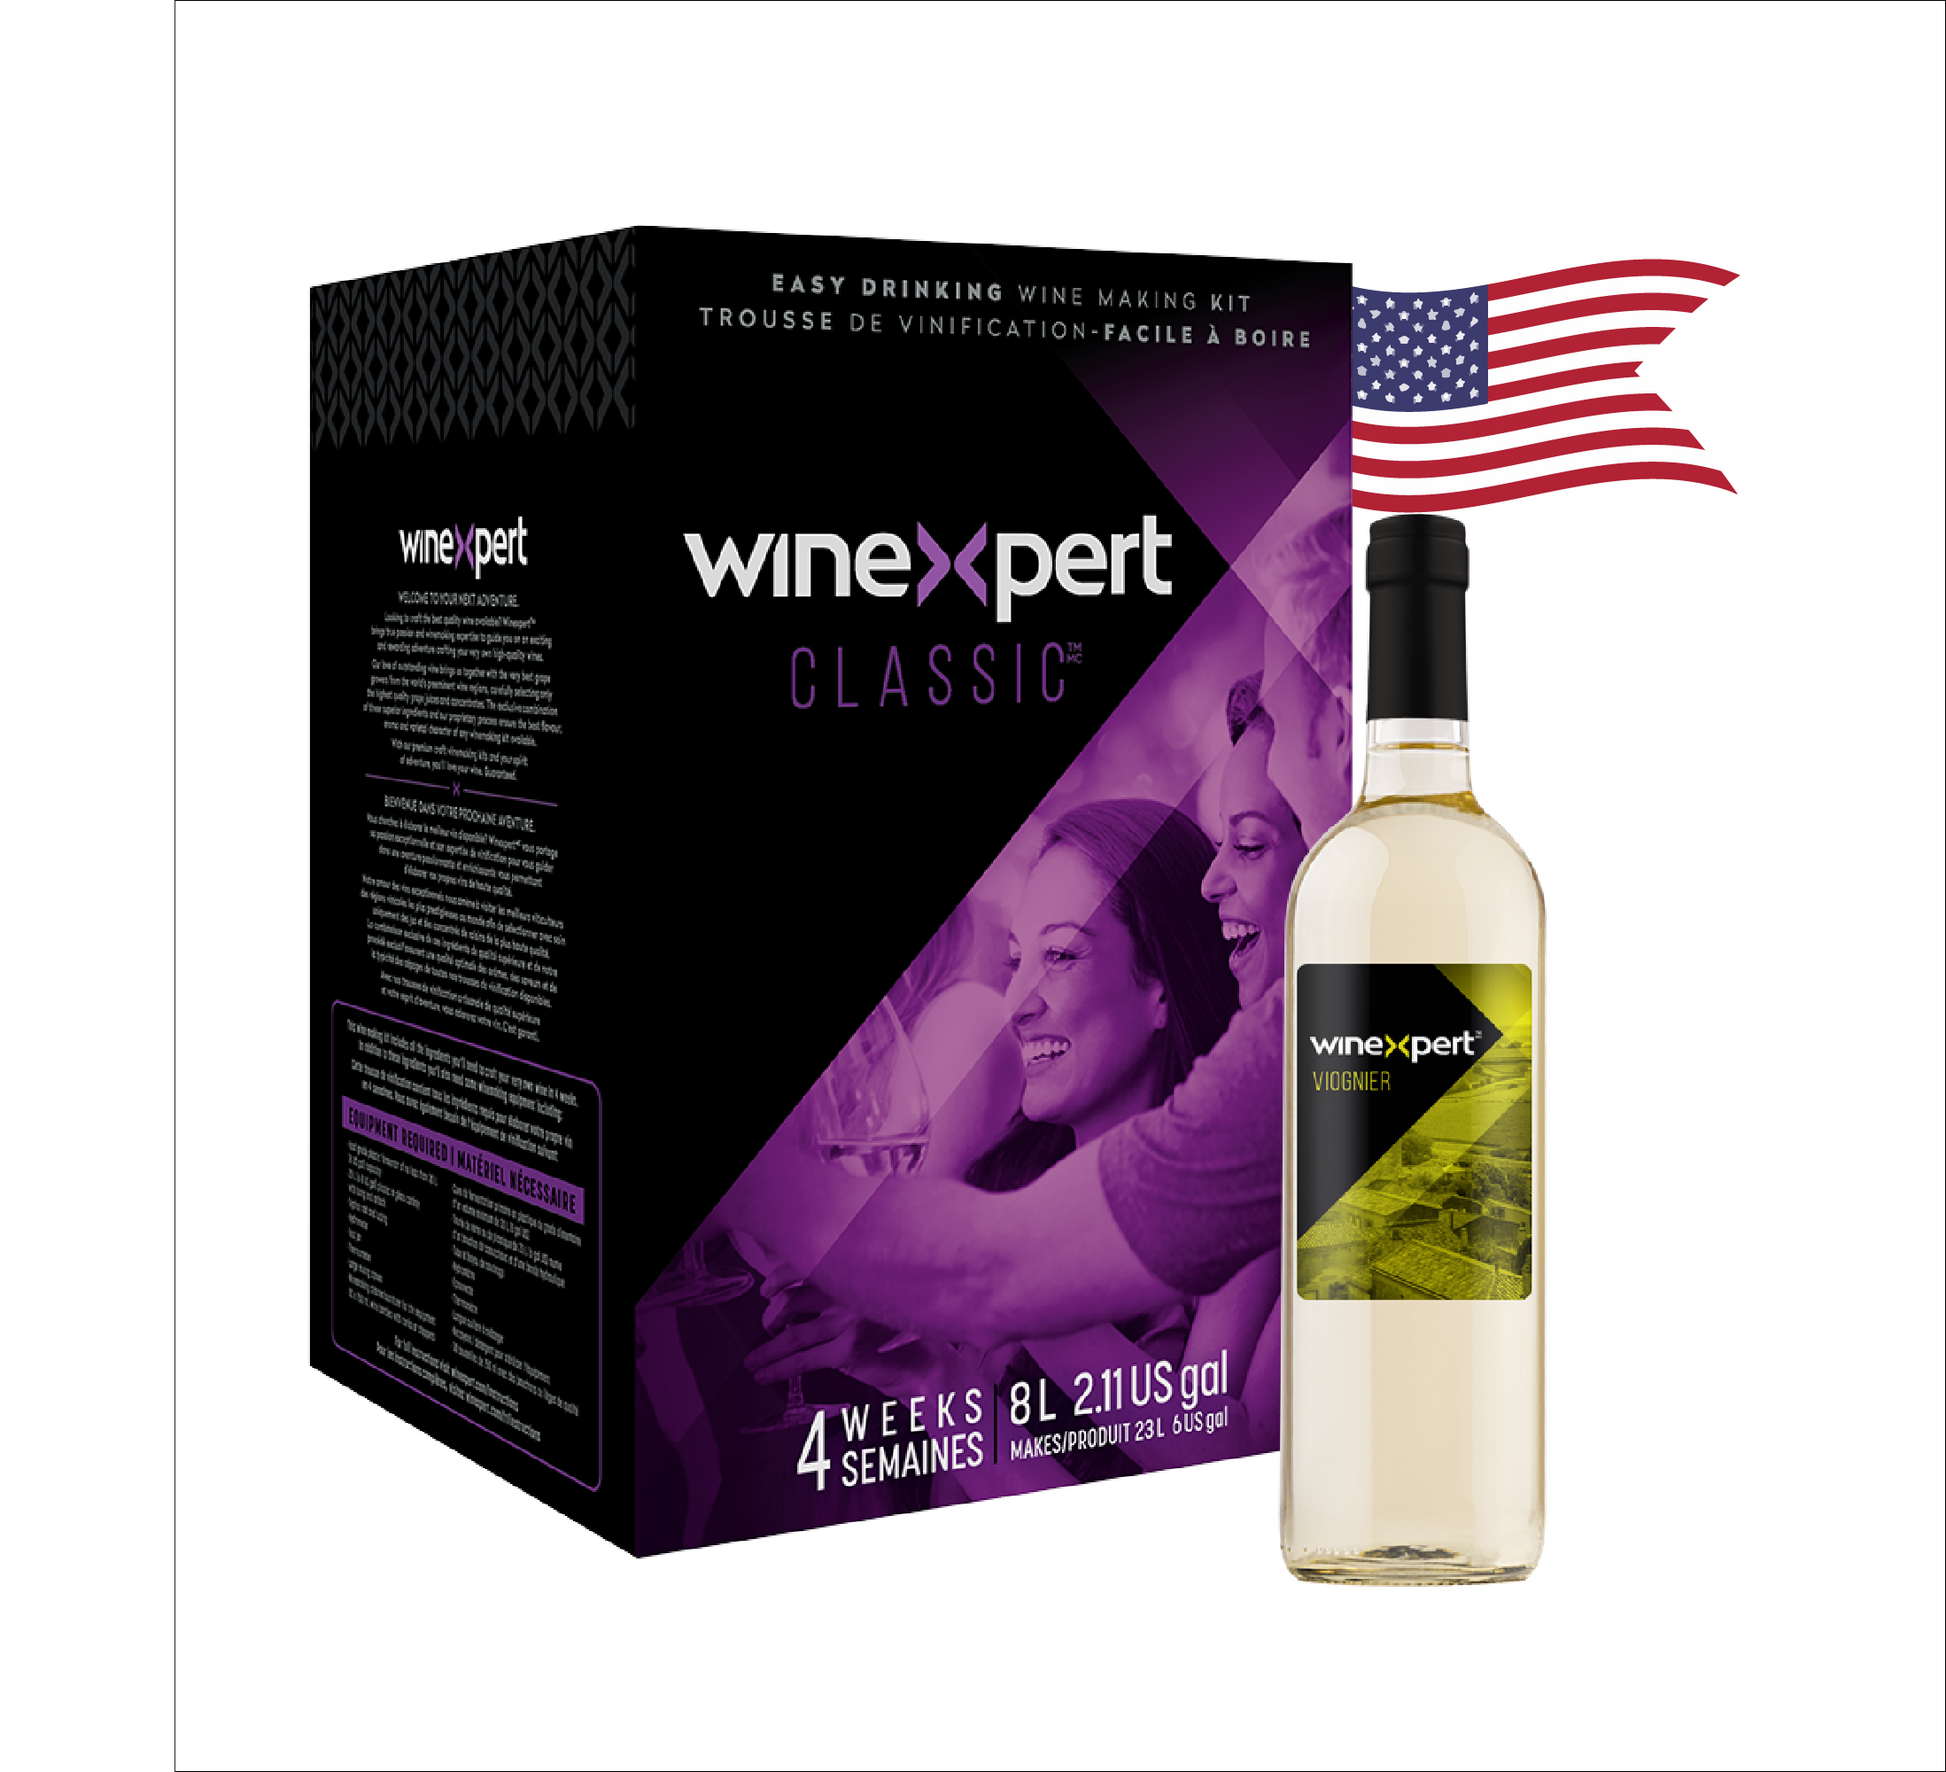 Winexpert Classic Viognier - California